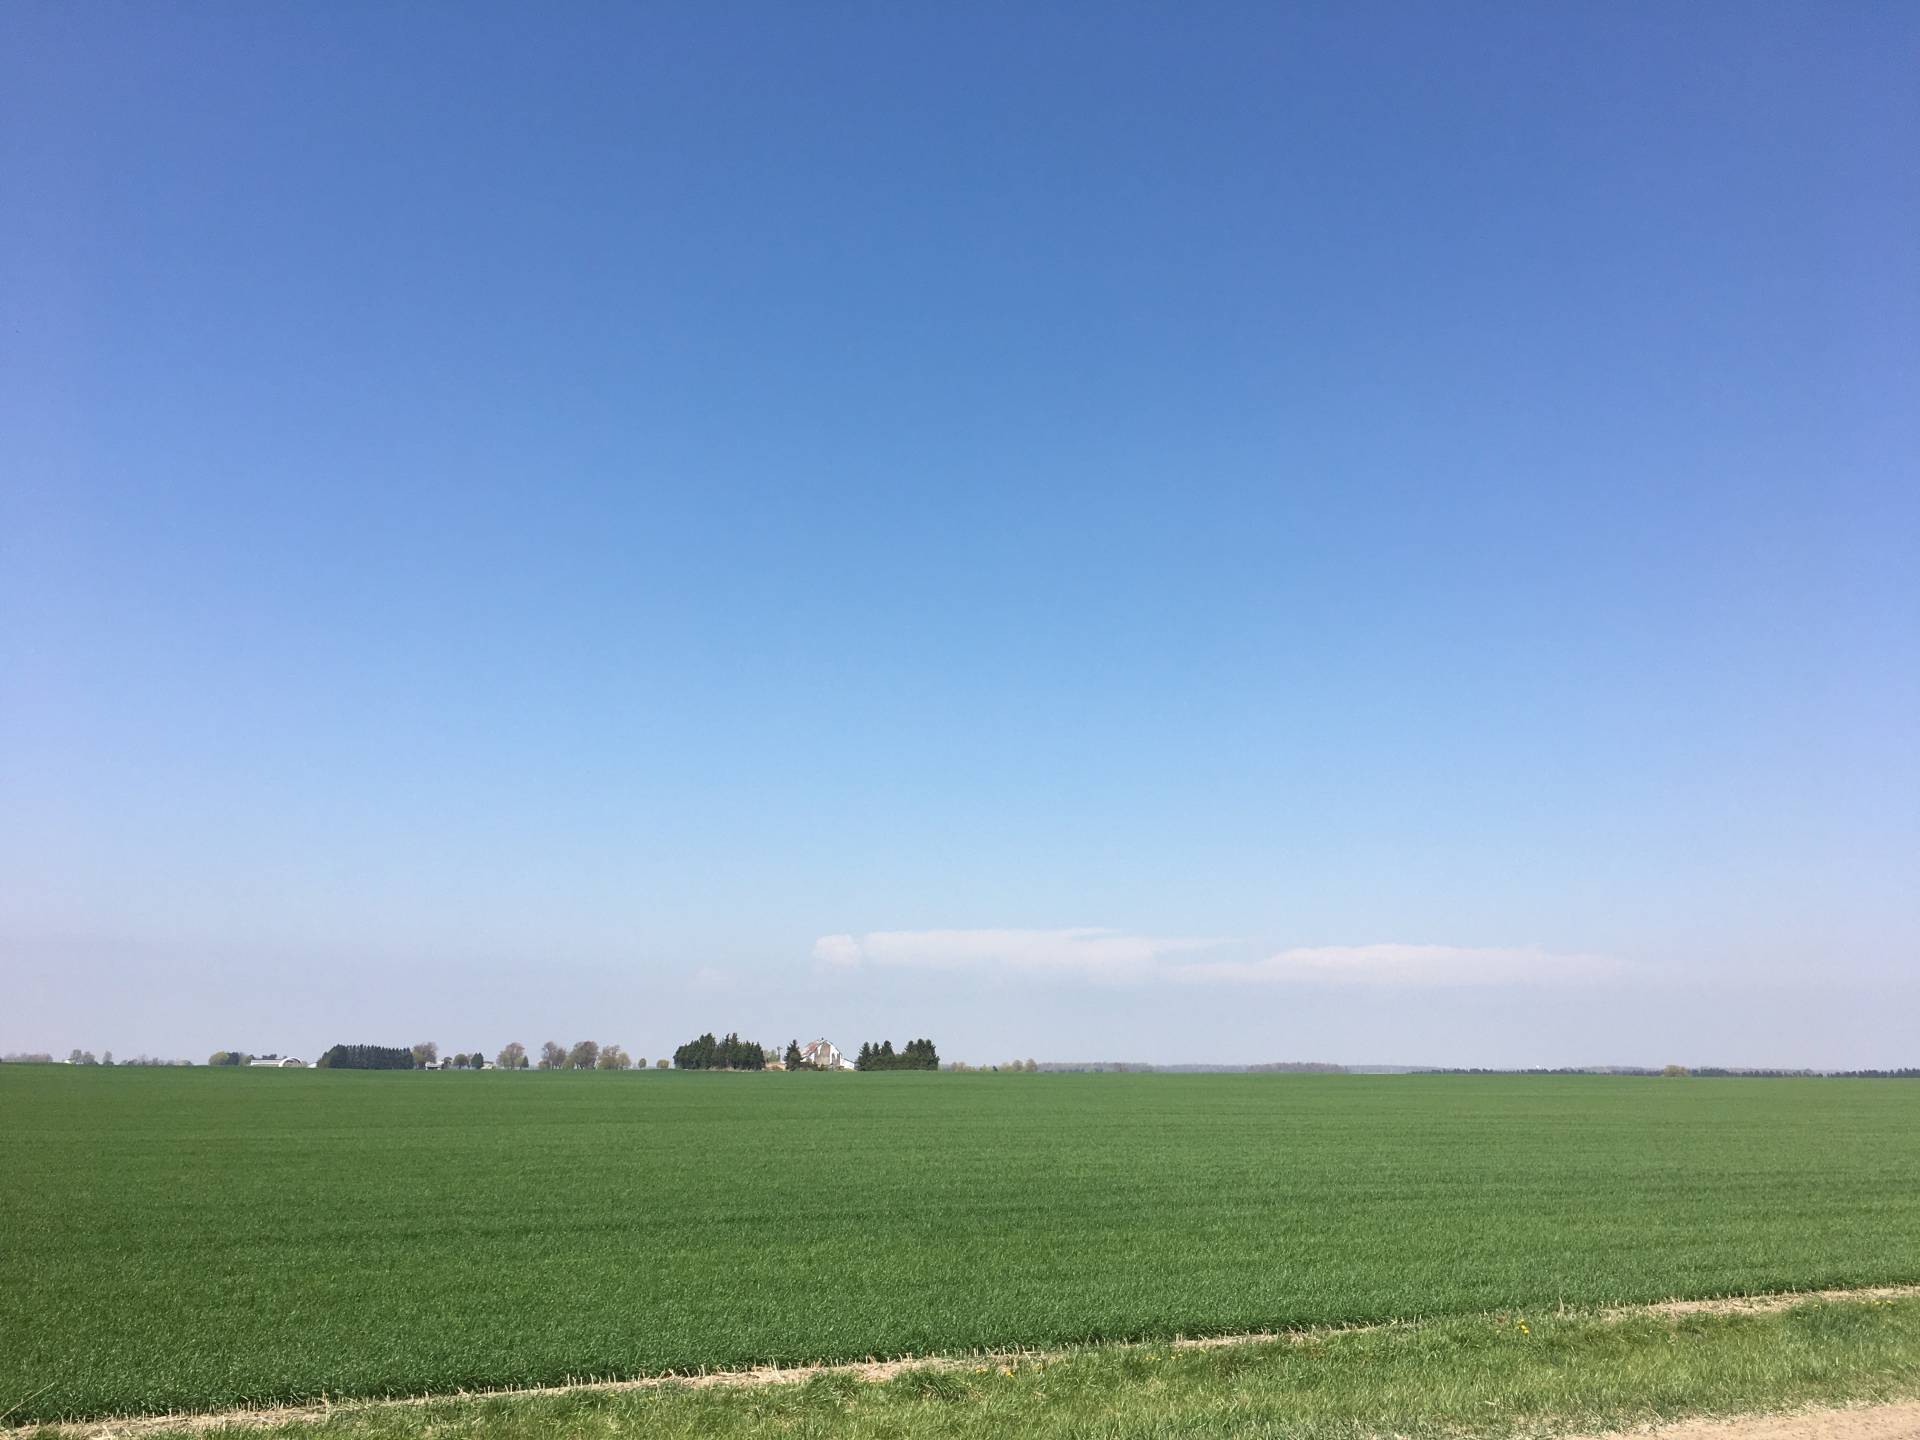 Blue sky bust in Ontario? 🤔 